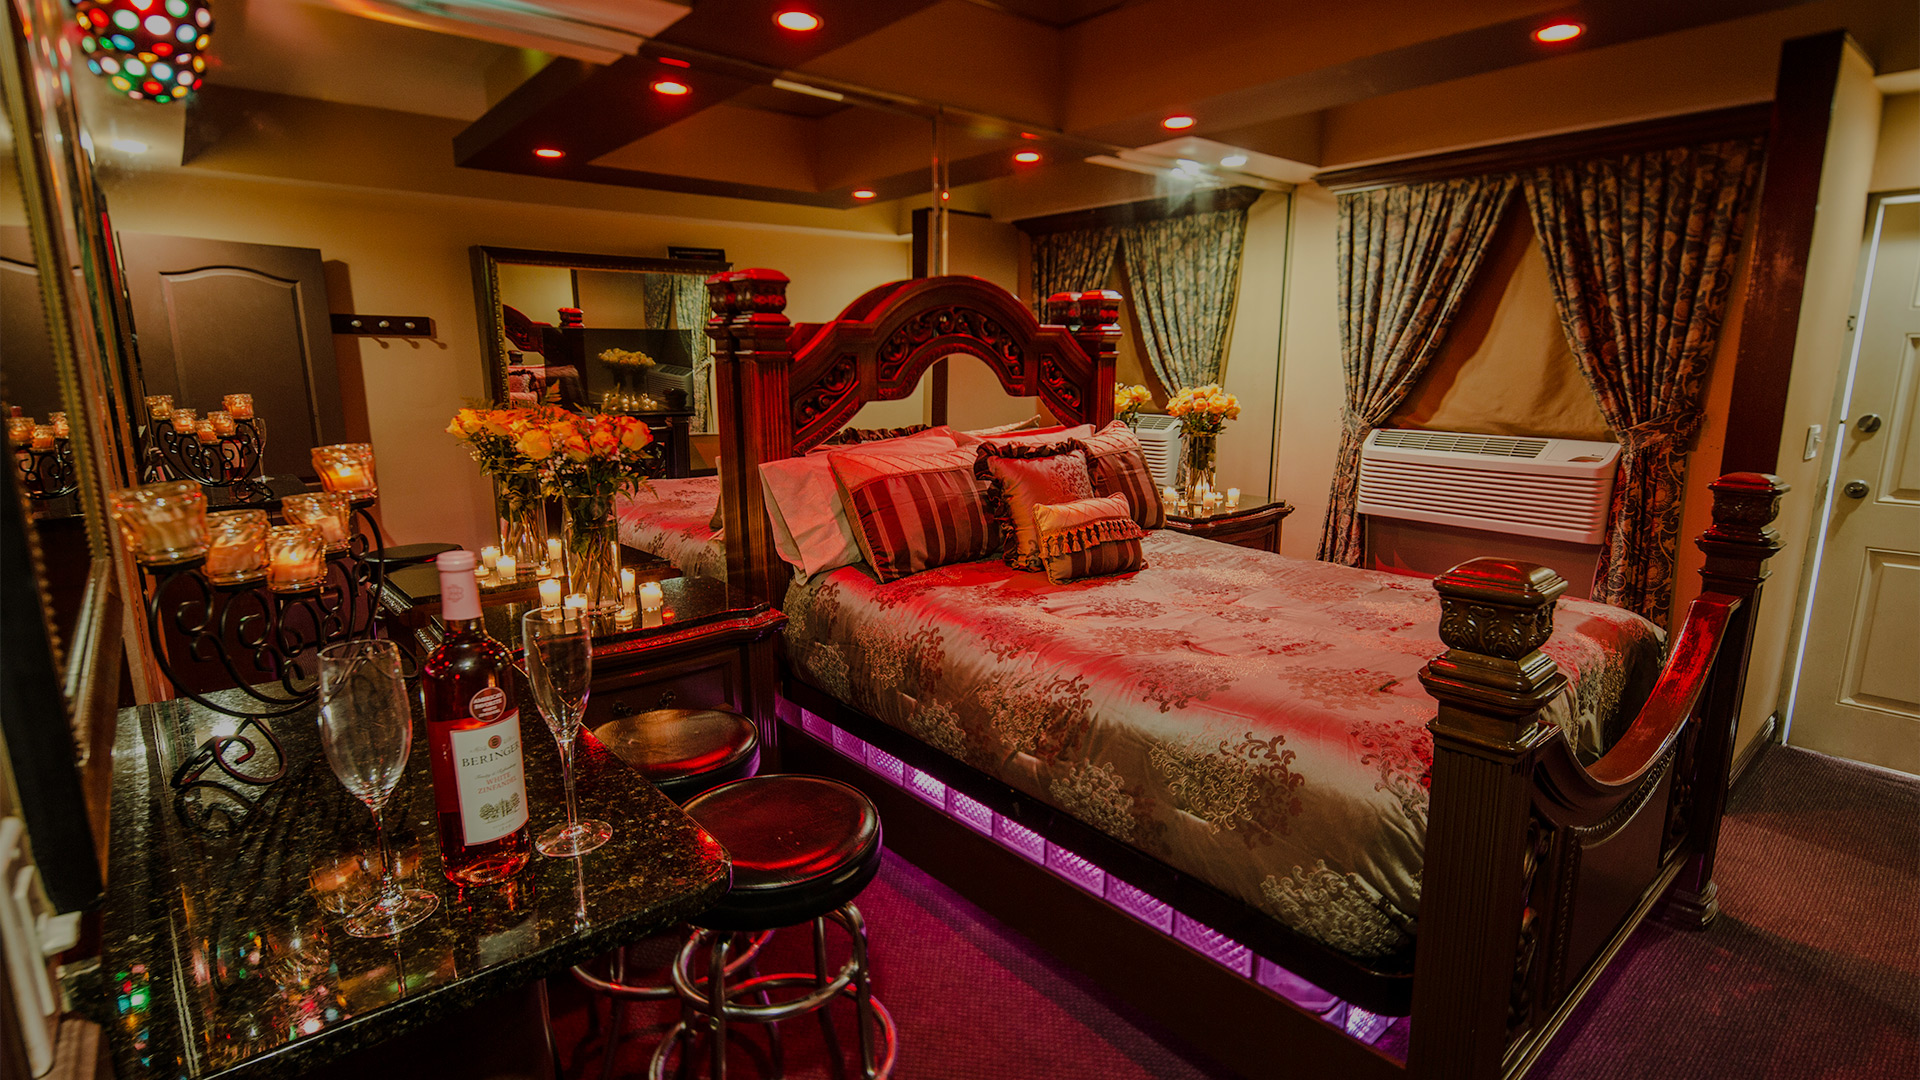 Executive Fantasy Hotels Executive Motel Miami Theme Hotels In Miami Romantic Miami Motel